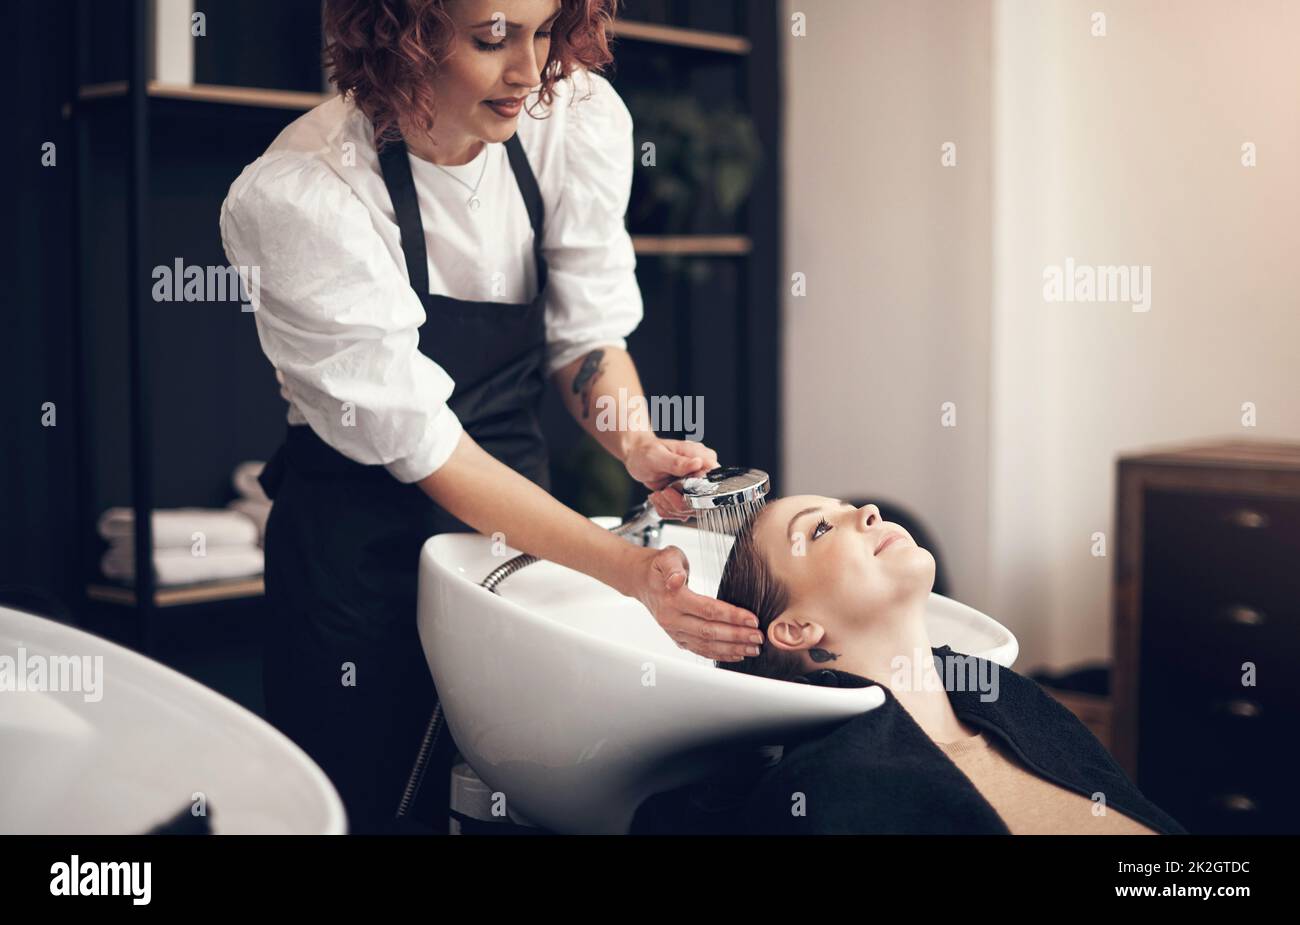 Achten Sie darauf, dass die Reinigung von der Wurzel bis zu den Spitzen durchgeführt wird. Aufnahme einer schönen jungen Frau, die im Salon ihre Haare waschen ließ. Stockfoto